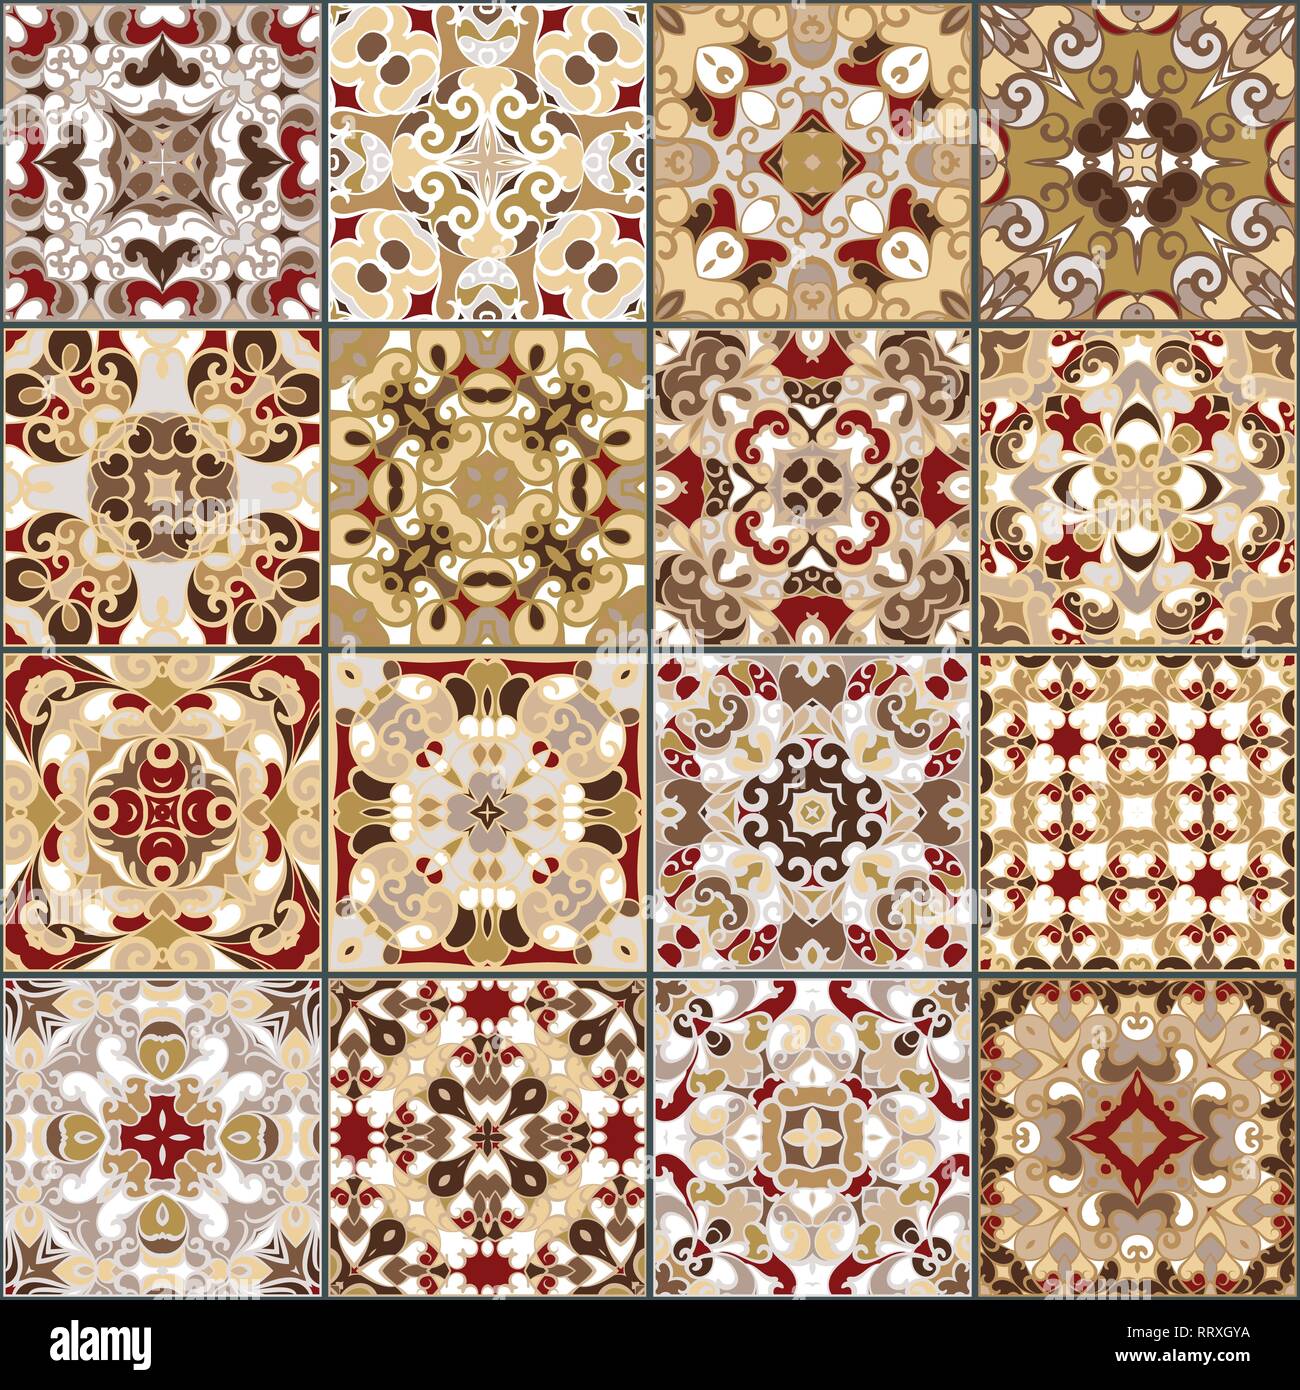 Eine Sammlung von Keramikfliesen in Rot Gold Farben. Eine Reihe von quadratischen Muster im orientalischen Stil. Vector Illustration. Stock Vektor